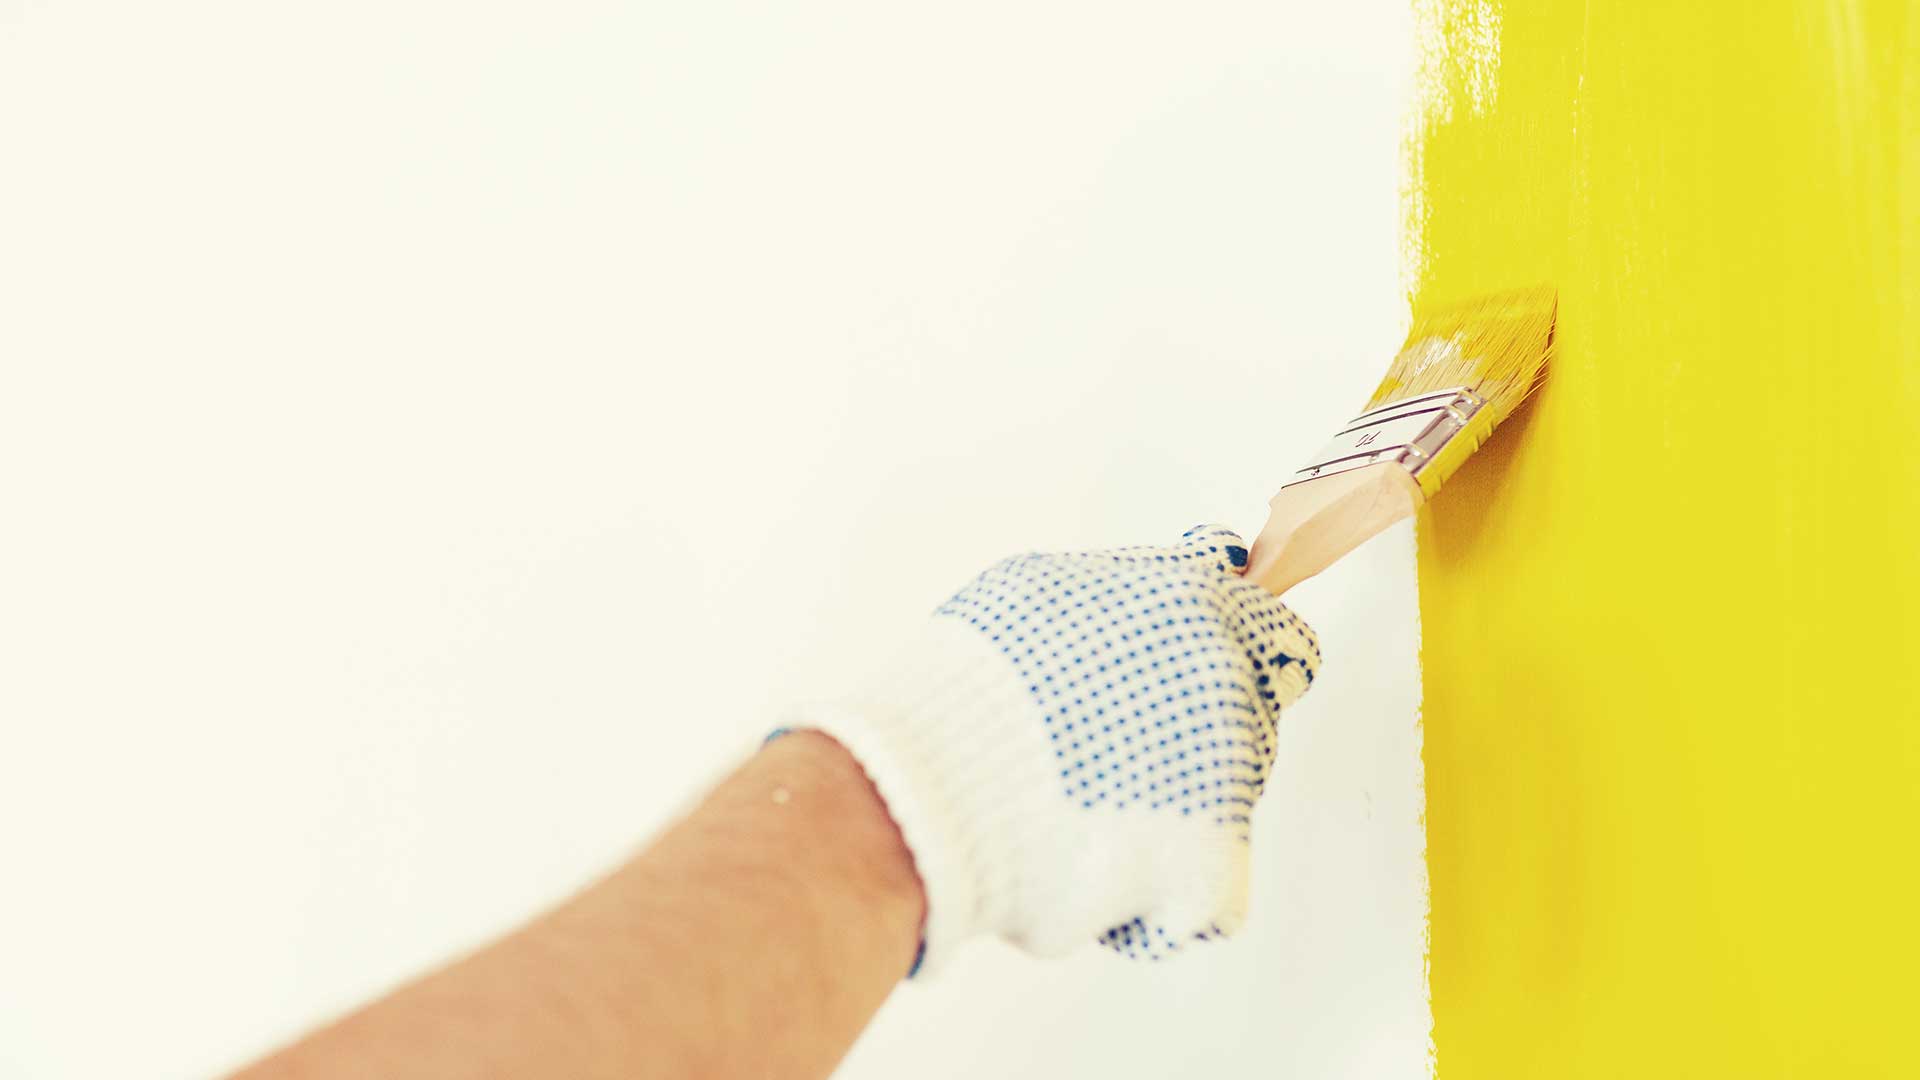 specjalista maluje ściany małym pędzlem na żółto -  w 2021